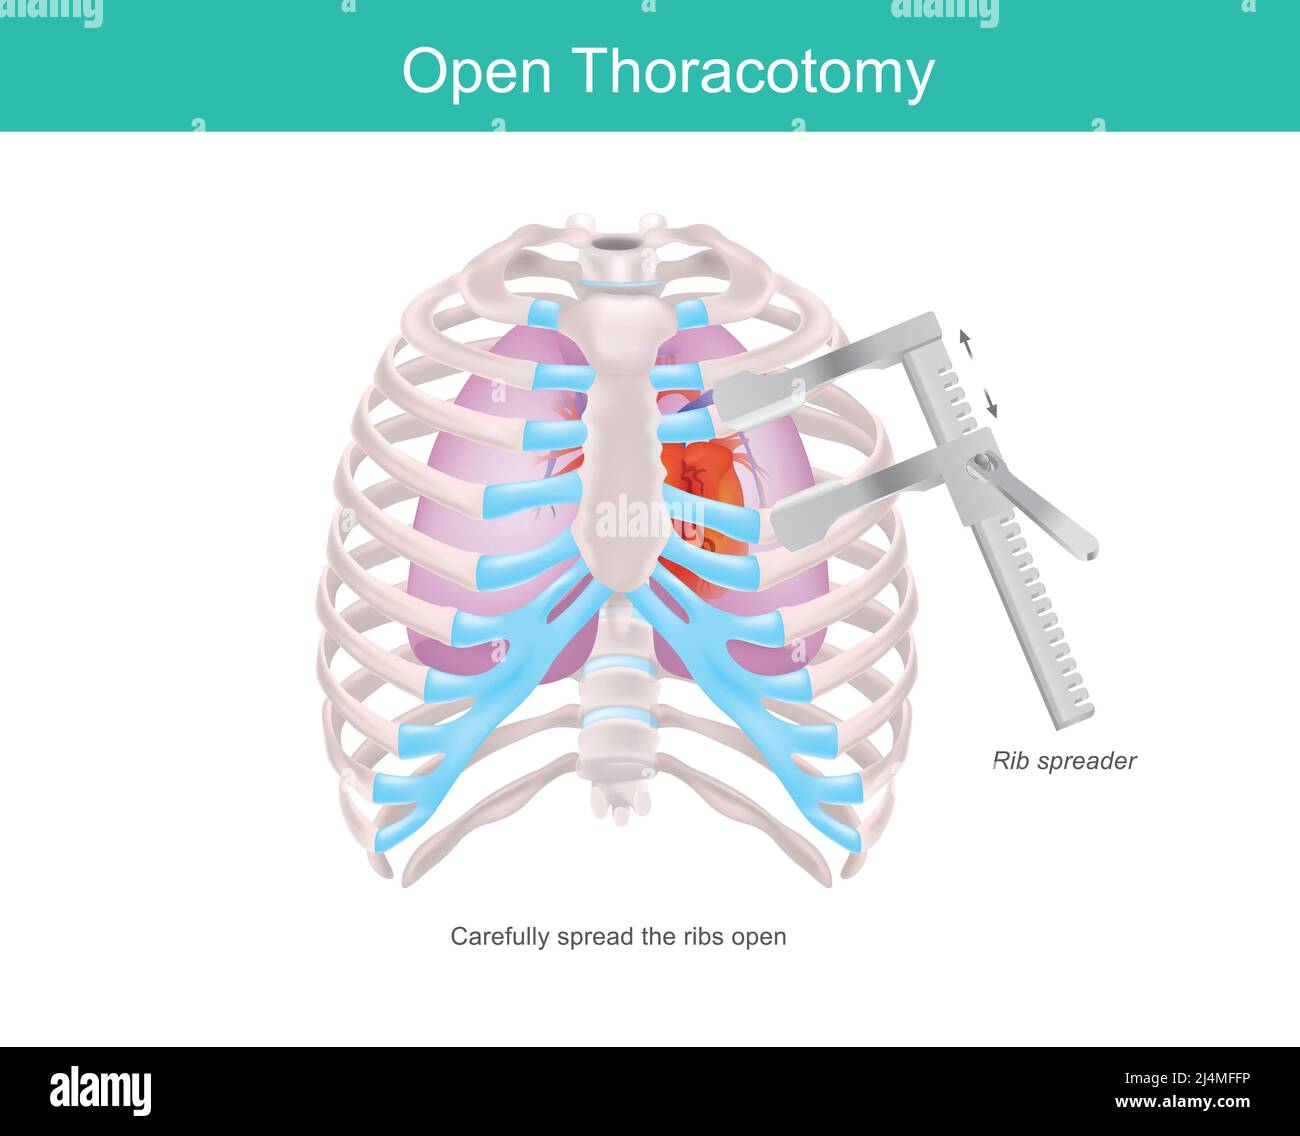 Thoracotomie ouverte. Procédure permettant d'accéder à l'espace pleural du thorax humain par un outil médical appelé Rib Spreader. Illustration de Vecteur